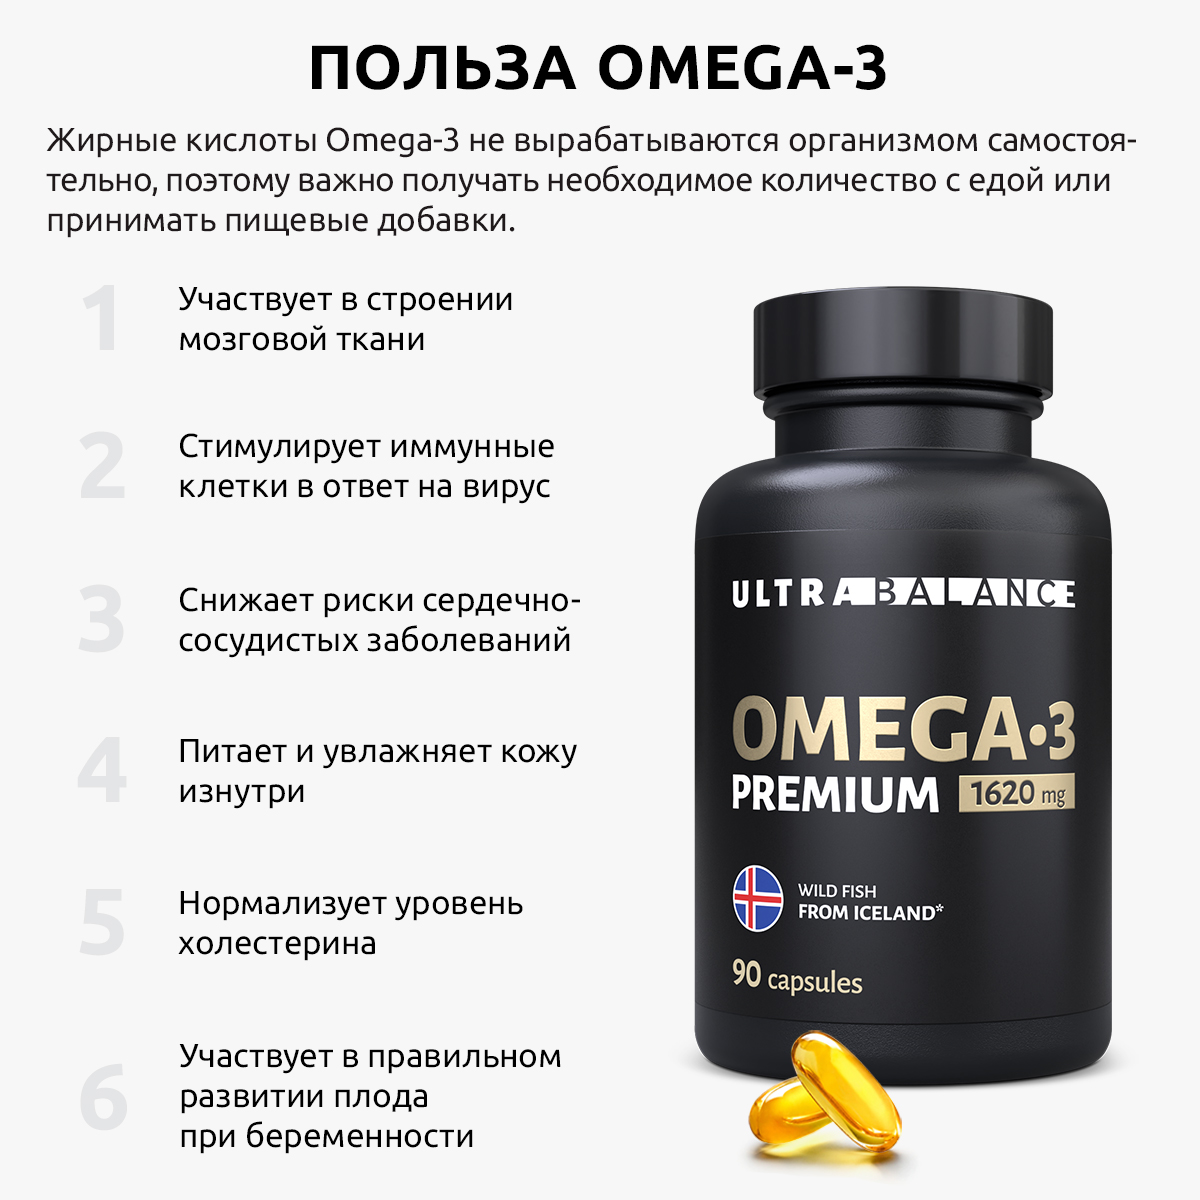 Витамины и минералы для женщин UltraBalance Elements for women Omega 3 премиум - фото 2